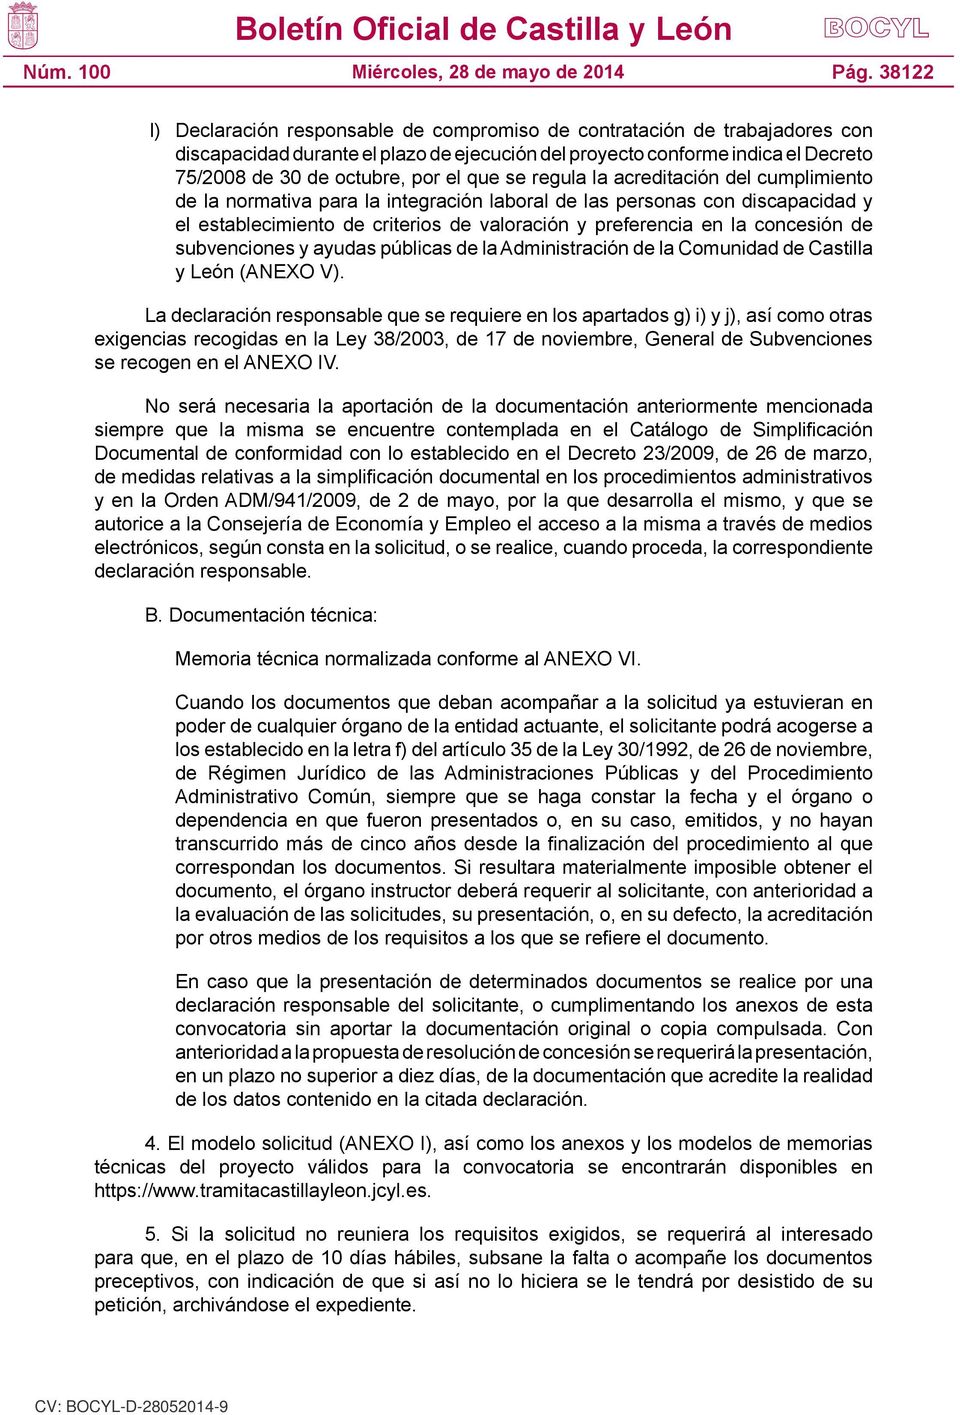 concesión de subvenciones y ayudas públicas de la Administración de la Comunidad de Castilla y León (ANEXO V).